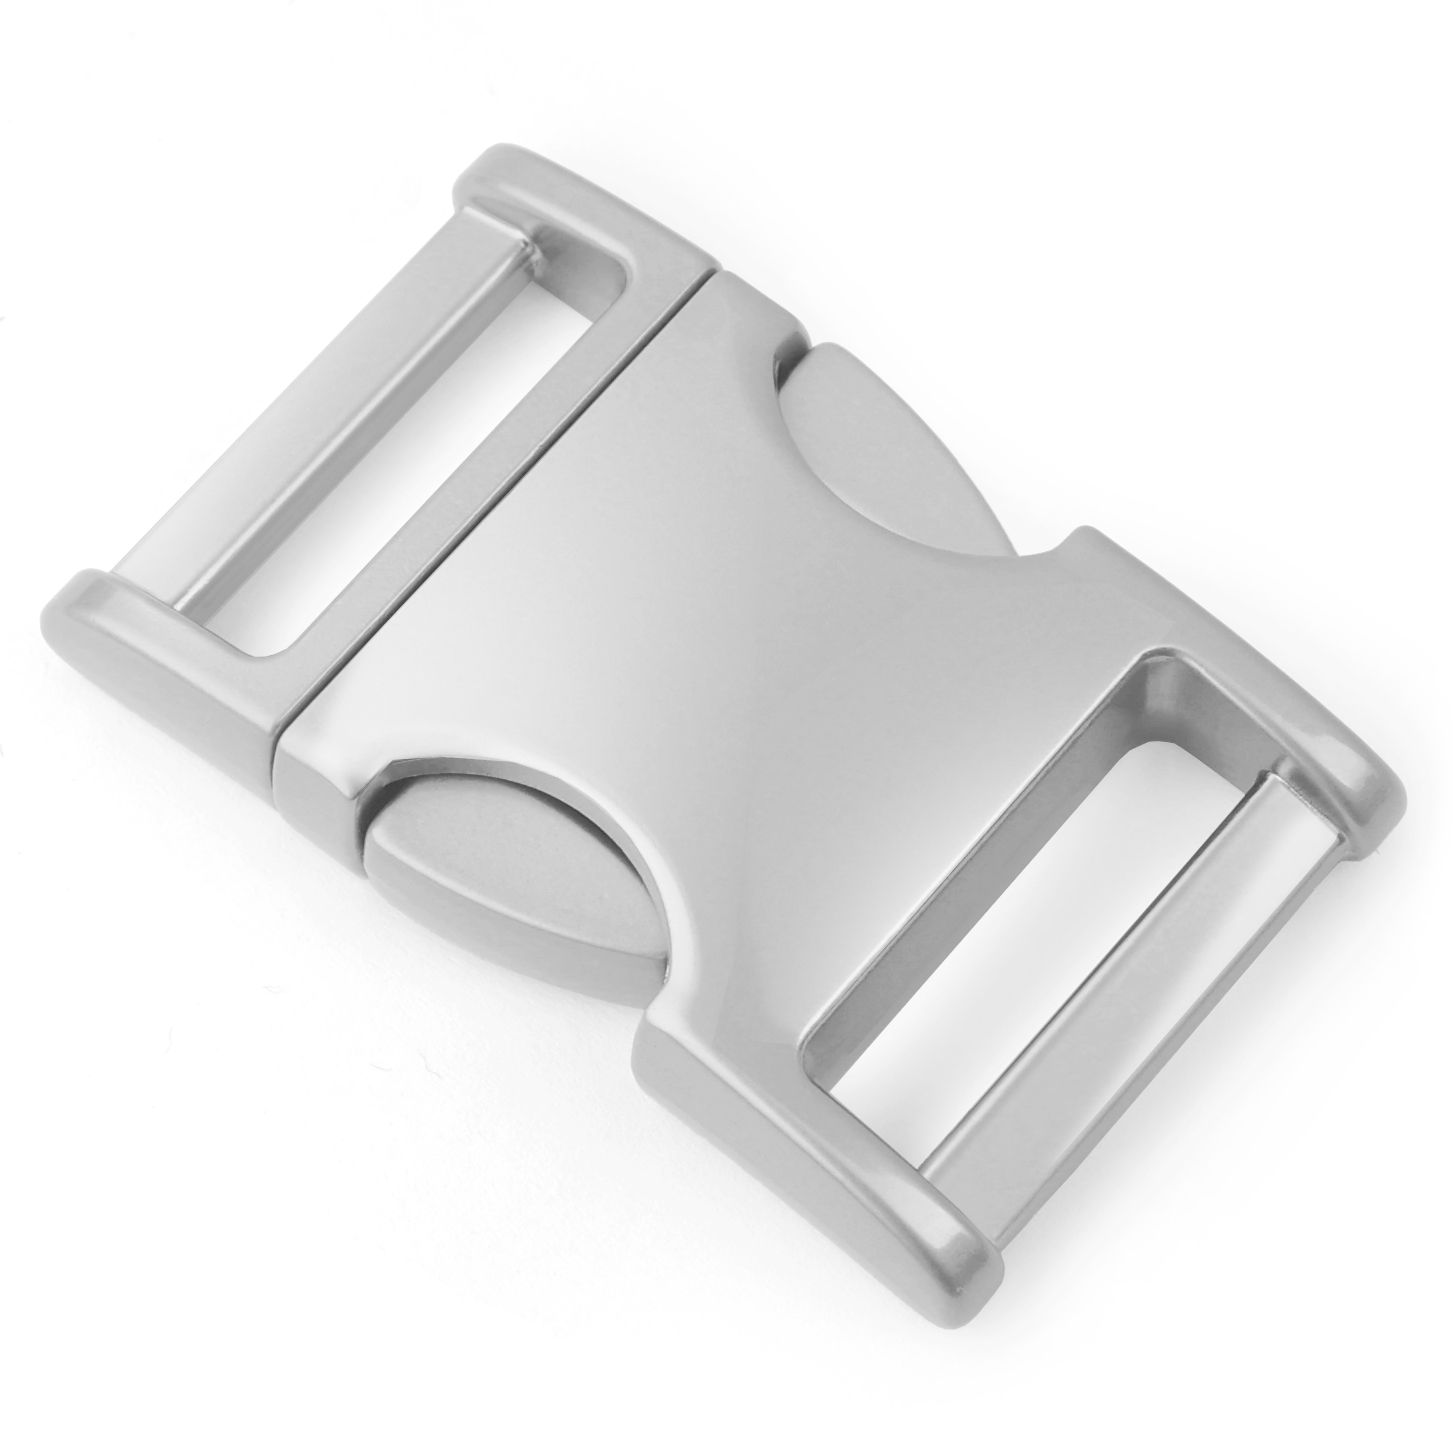 Klickverschluss Metall "Zinc-Max"